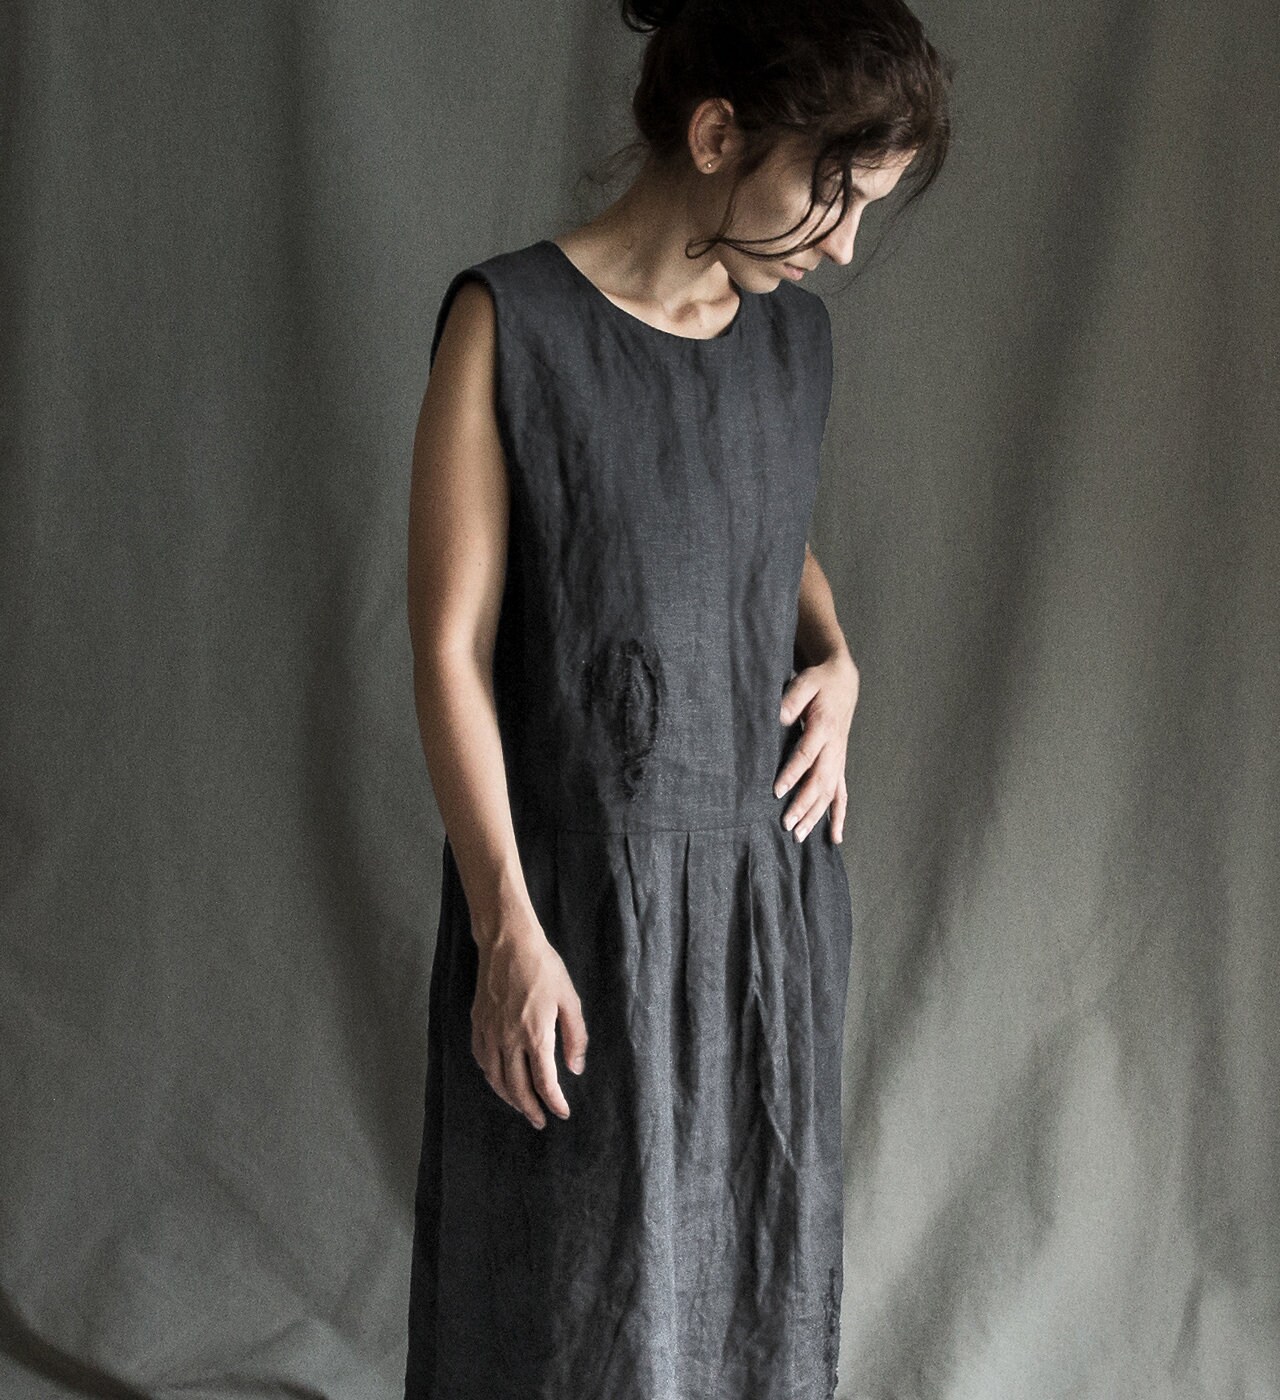 XS-S Size MIDNIGHT Dress in Dark Blue Medium Weight Linen. - Etsy